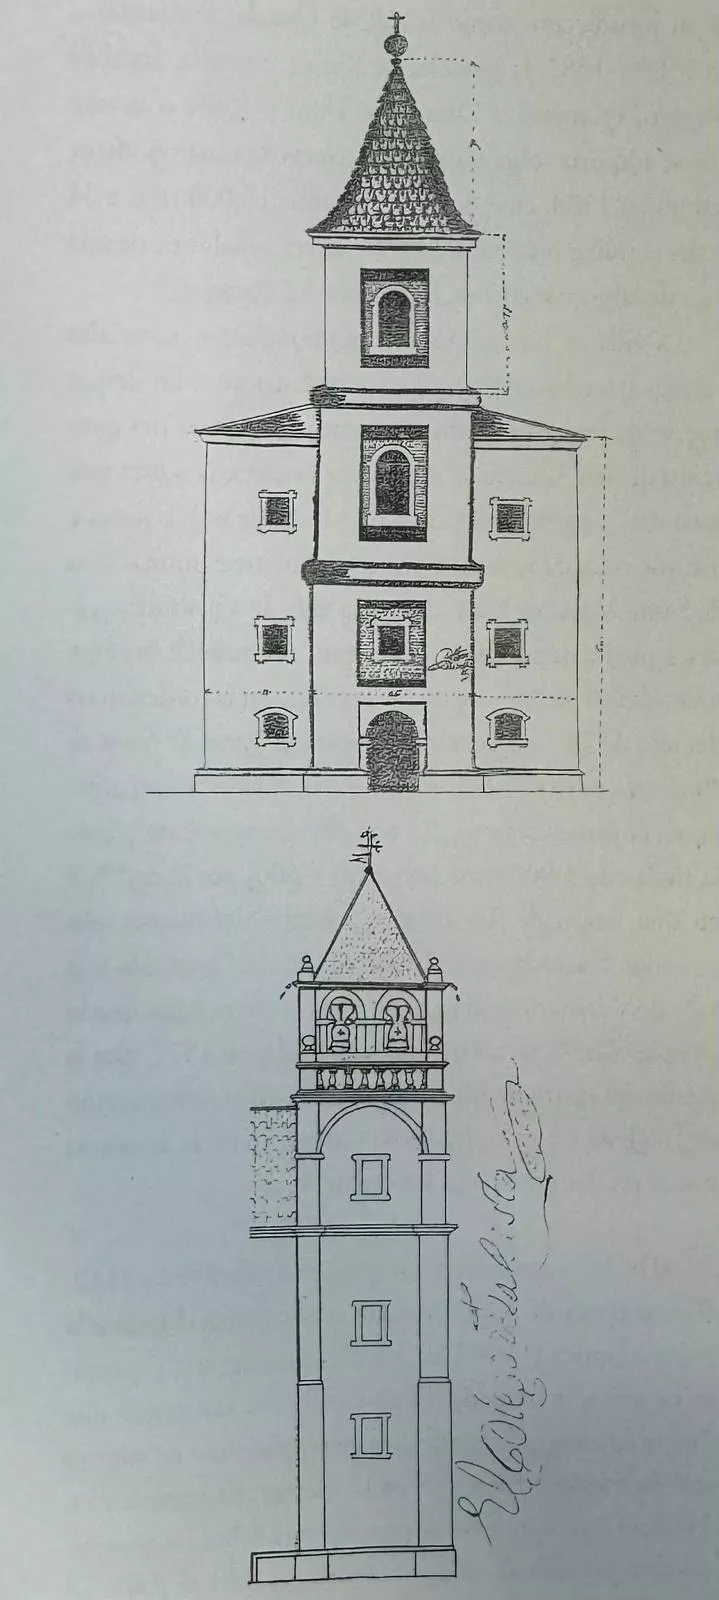 Diseño actual de la torre de La Encina de estilo barroco